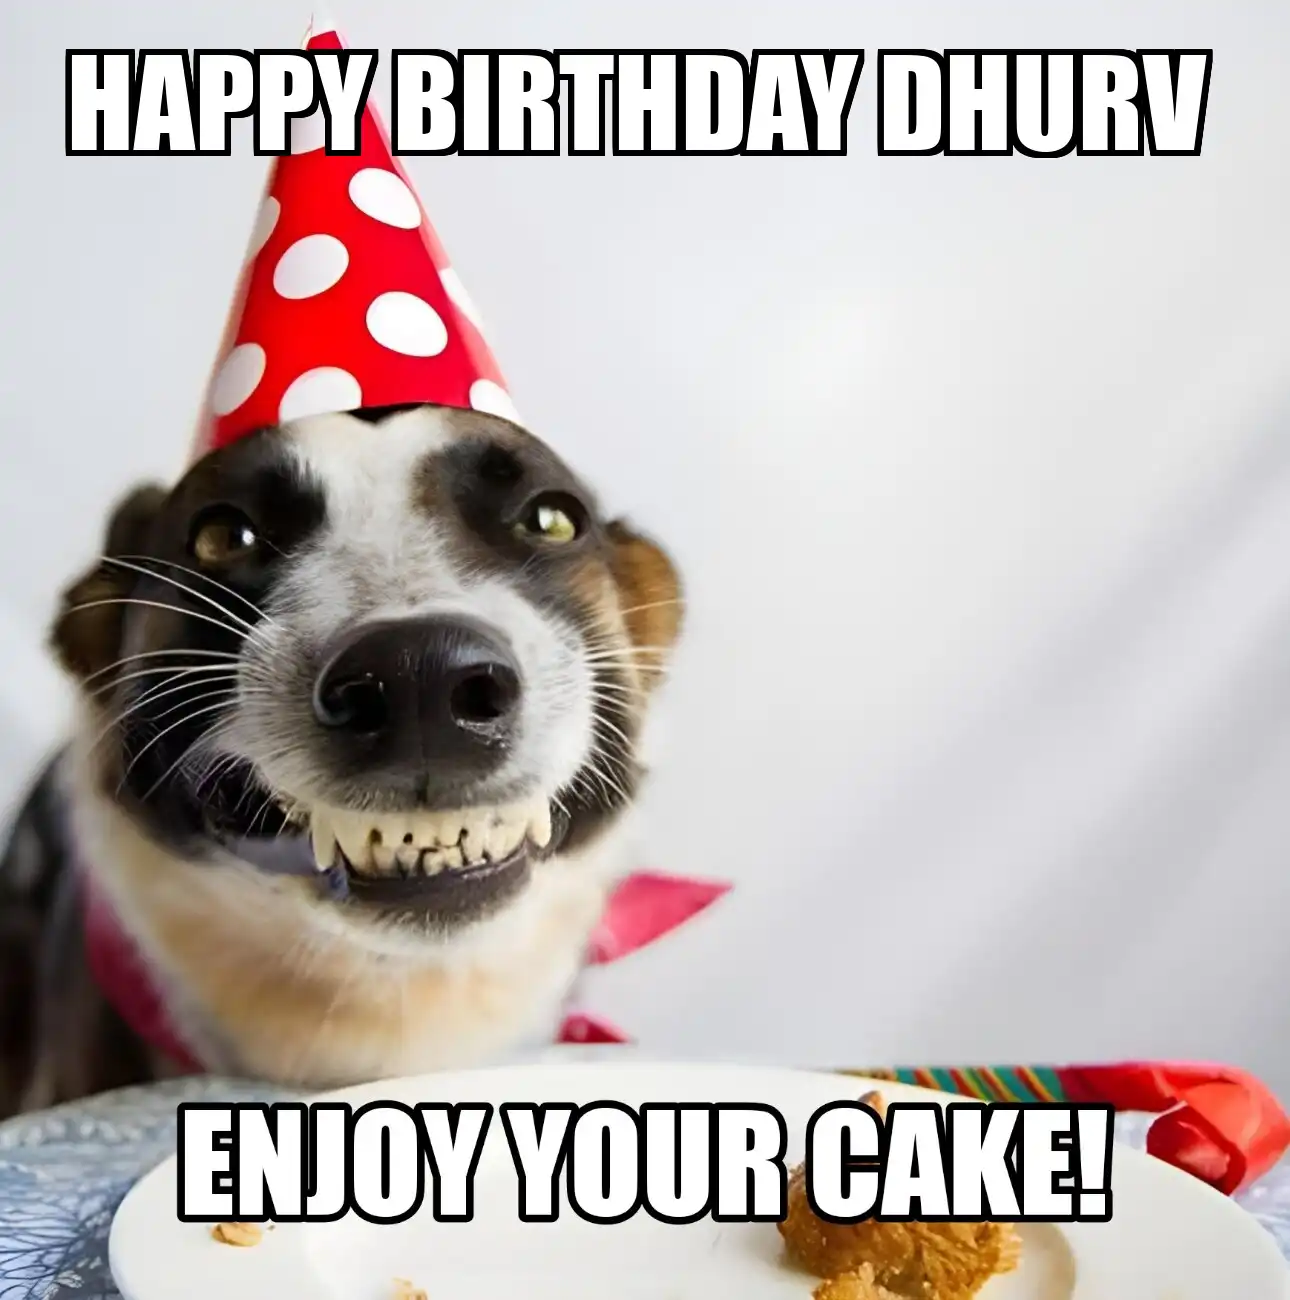 Happy Birthday Dhurv Enjoy Your Cake Dog Meme